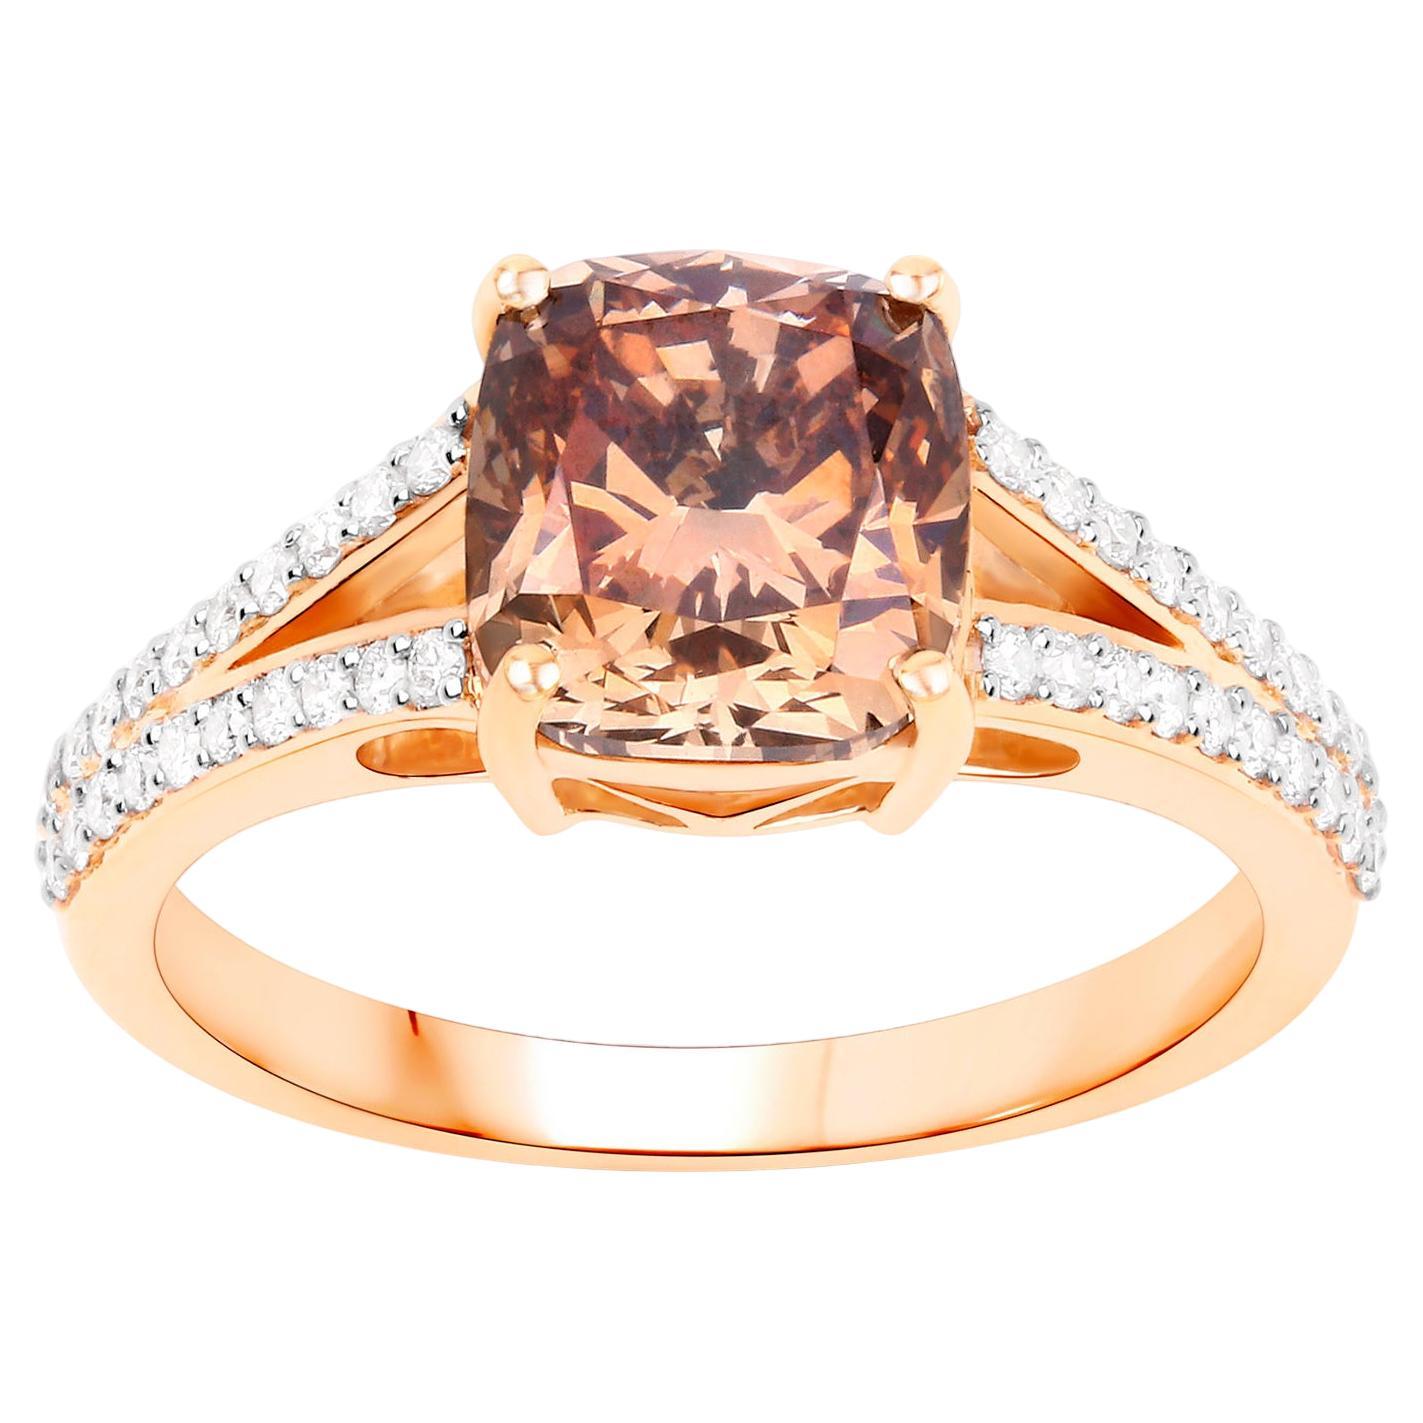 IGI Certified Brown Diamond Ring Diamond Setting 3.35 Carats 18K Rose Gold